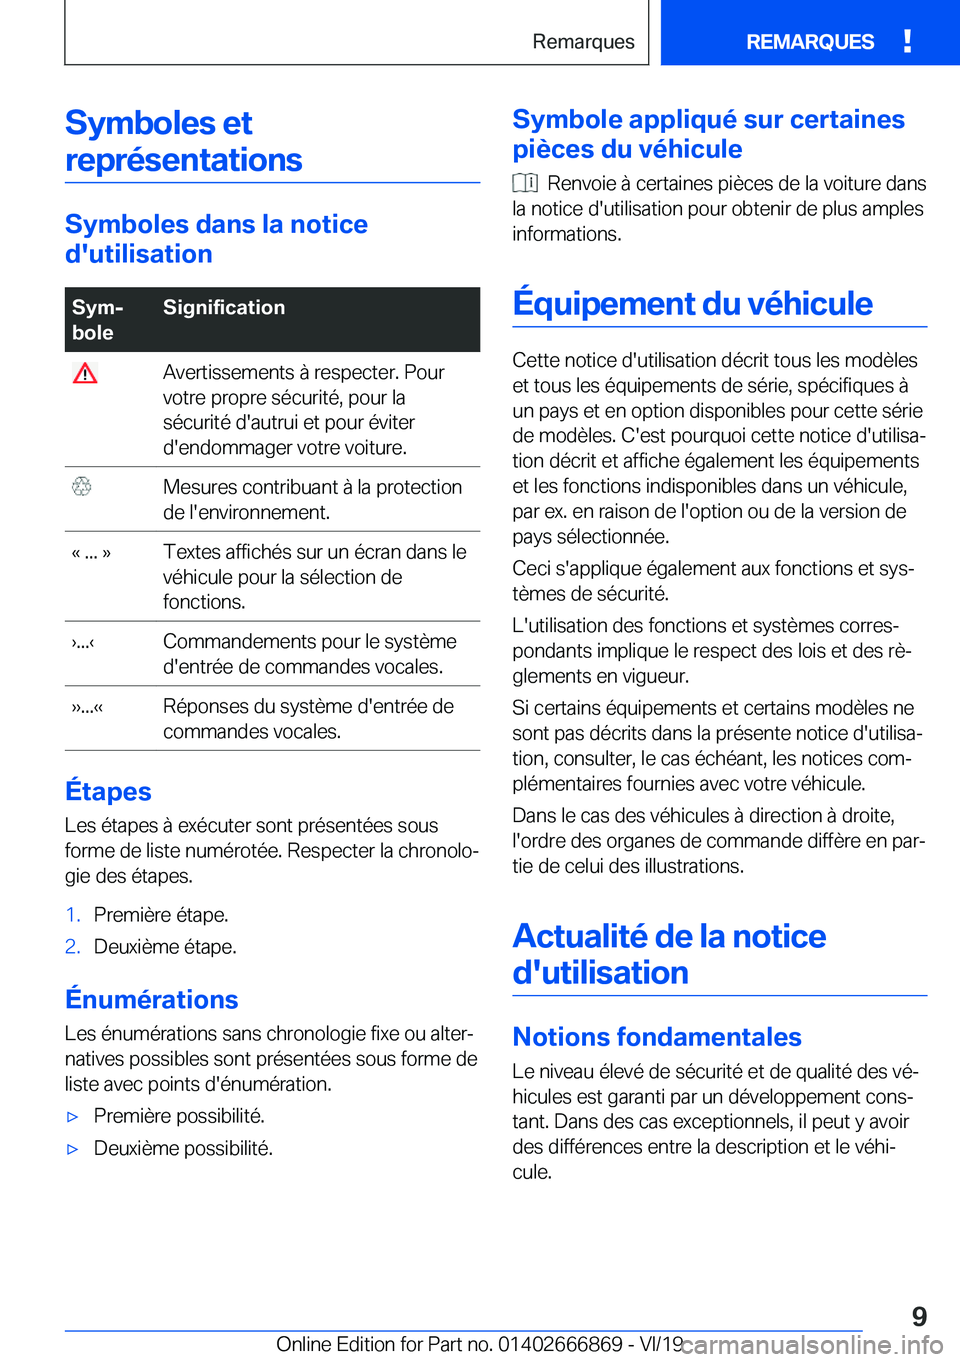 BMW X4 M 2020  Notices Demploi (in French) �S�y�m�b�o�l�e�s��e�t�r�e�p�r�é�s�e�n�t�a�t�i�o�n�s
�S�y�m�b�o�l�e�s��d�a�n�s��l�a��n�o�t�i�c�e
�d�'�u�t�i�l�i�s�a�t�i�o�n
�S�y�mj
�b�o�l�e�S�i�g�n�i�f�i�c�a�t�i�o�n��A�v�e�r�t�i�s�s�e�m�e�